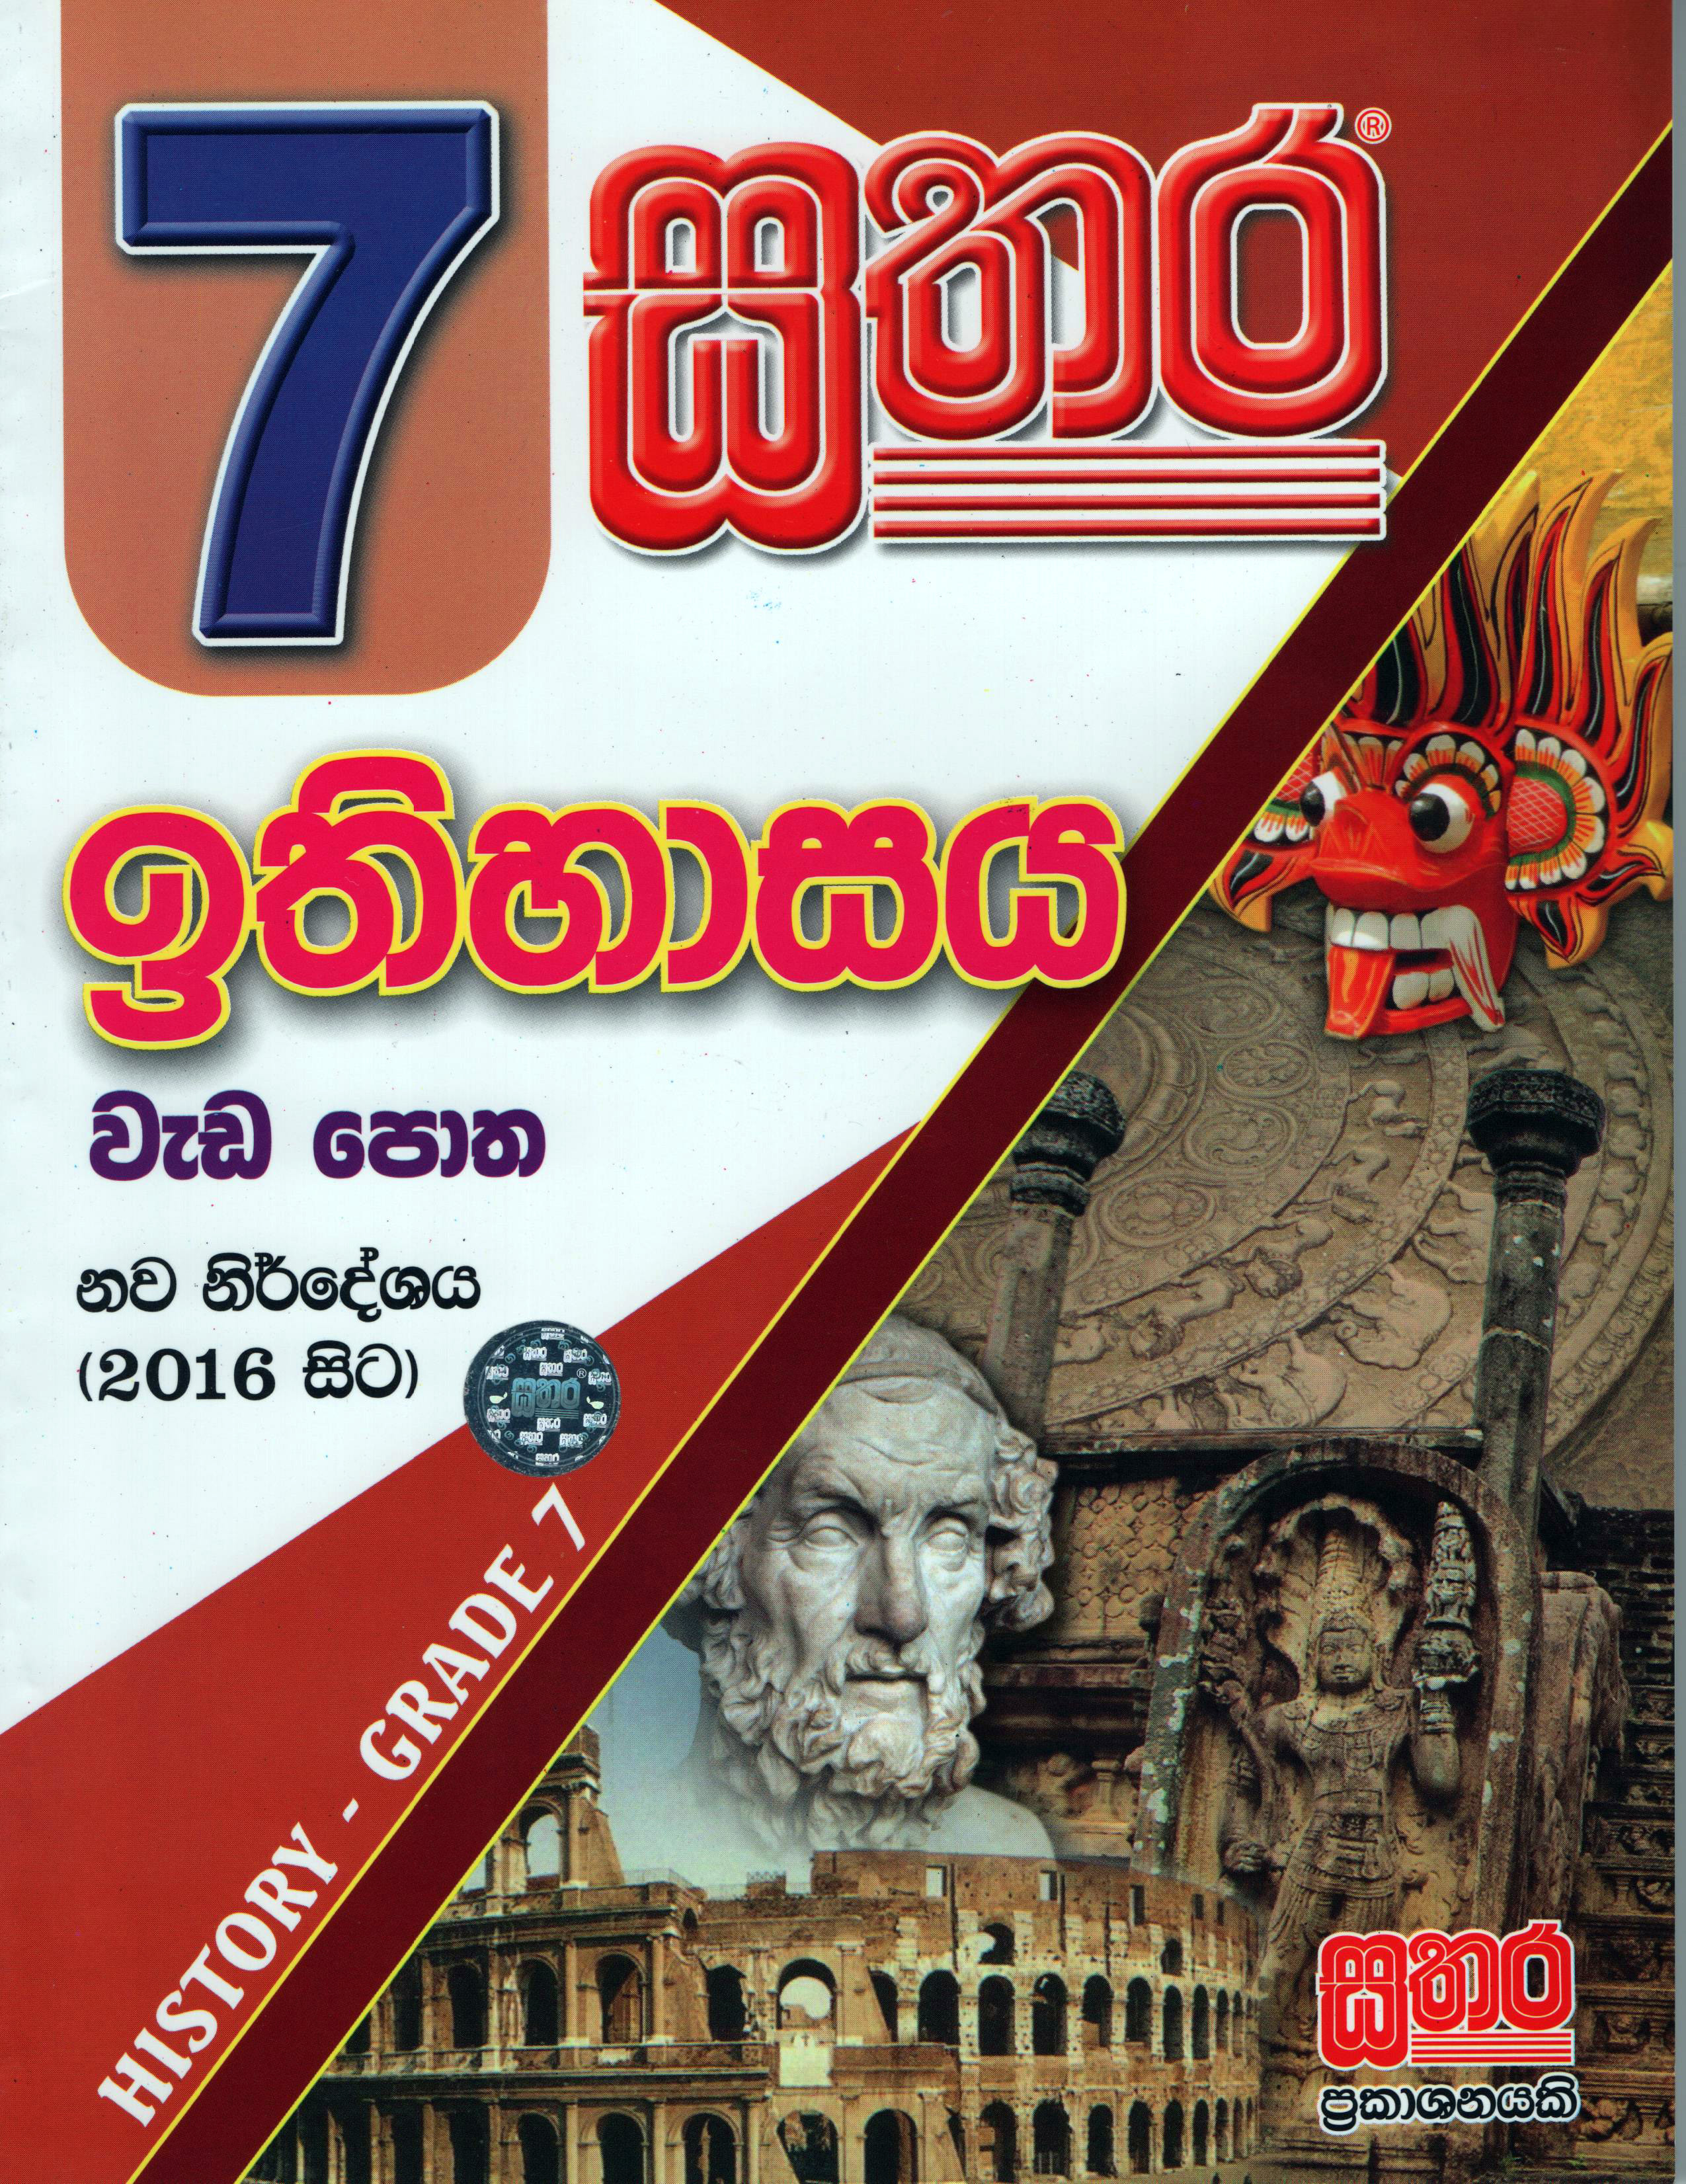 Sathara 7 Shreniya Ithihasaya Wada Potha  (2016 New Syllabus) 